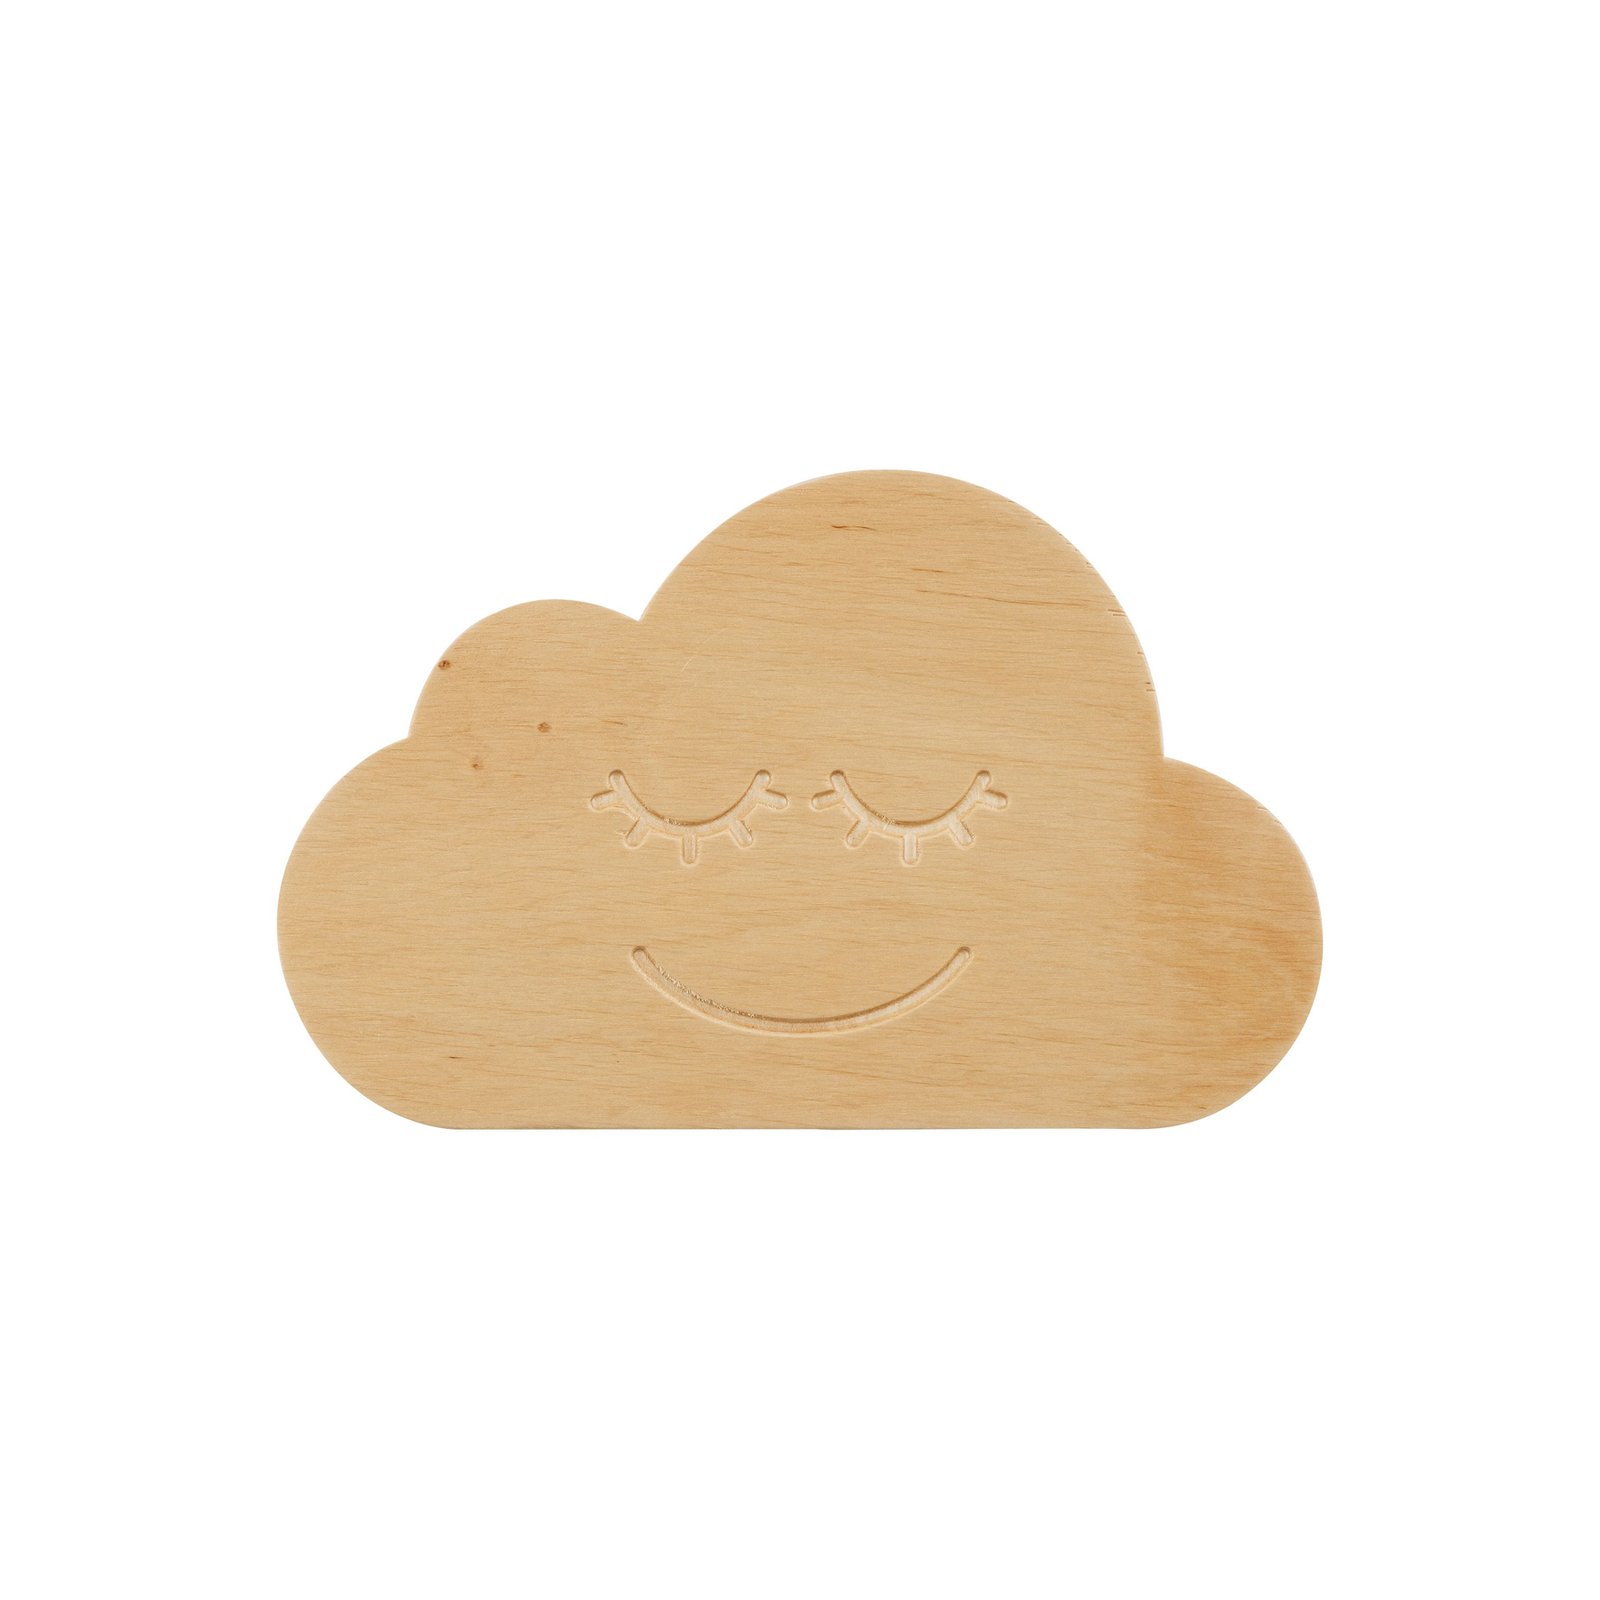 Wandleuchte Cloud, aus Holz, mit Stecker und Schalter